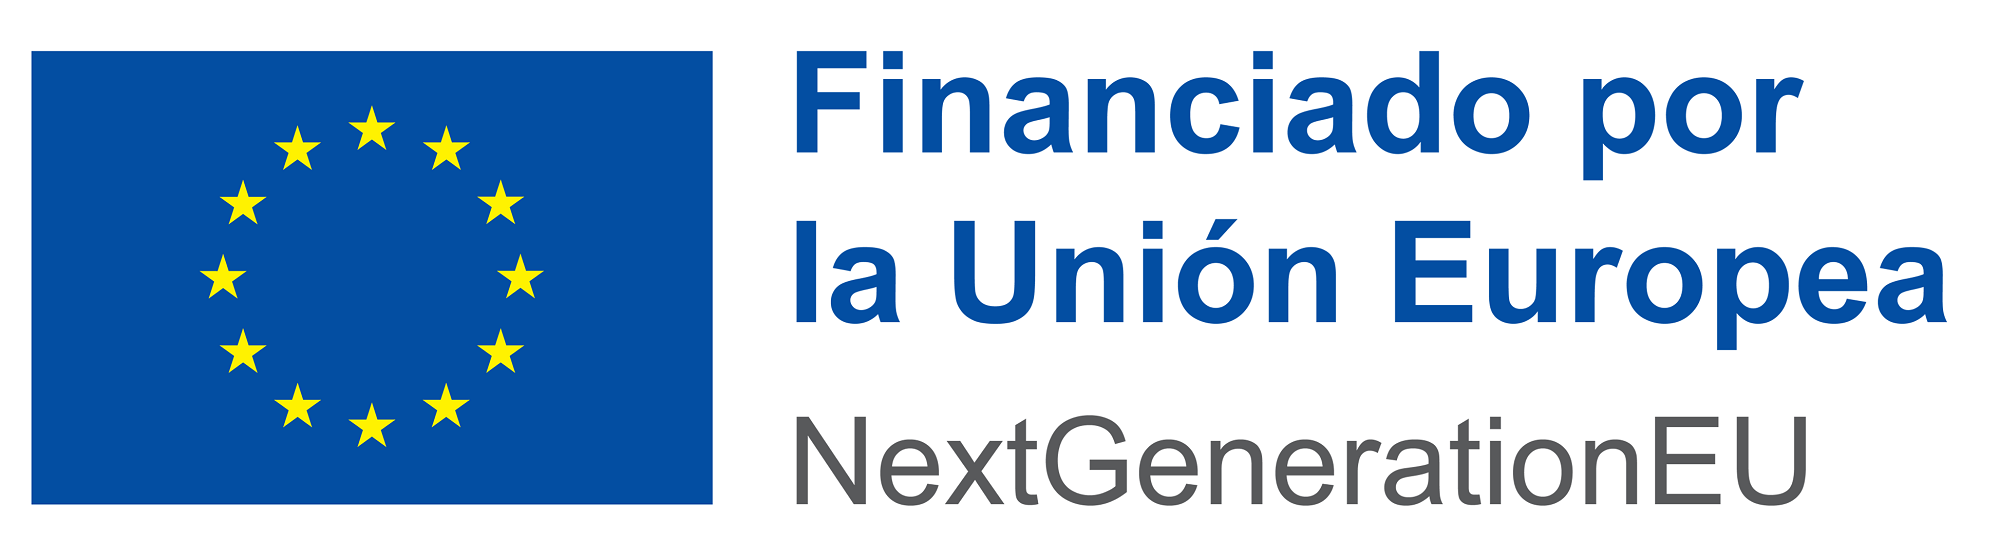 Financiado por la Unión Europea, fondos NextGenerationEU